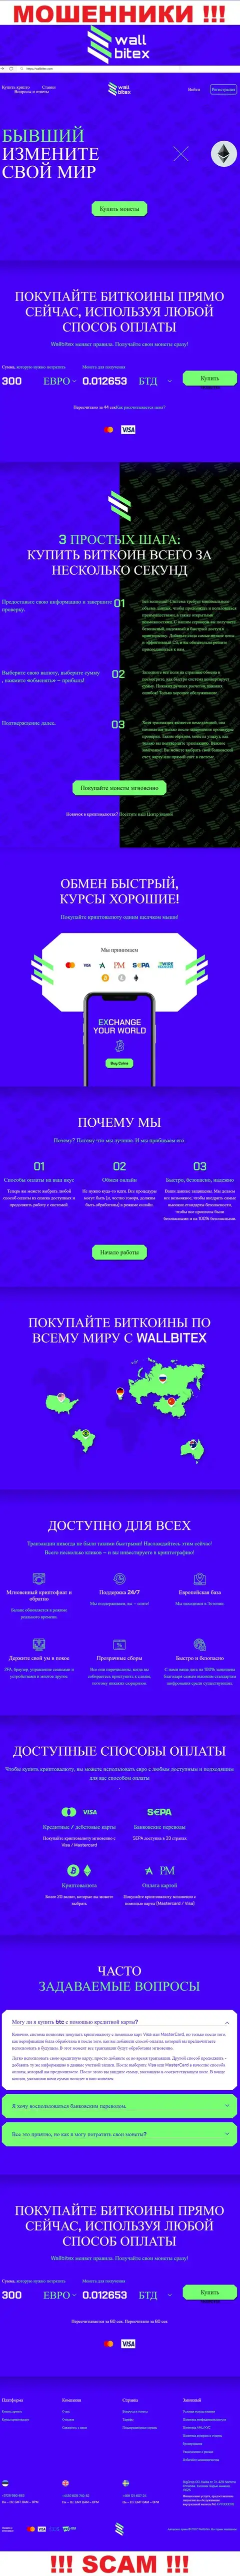 WallBitex Com - это официальный информационный ресурс жульнической компании WallBitex Com